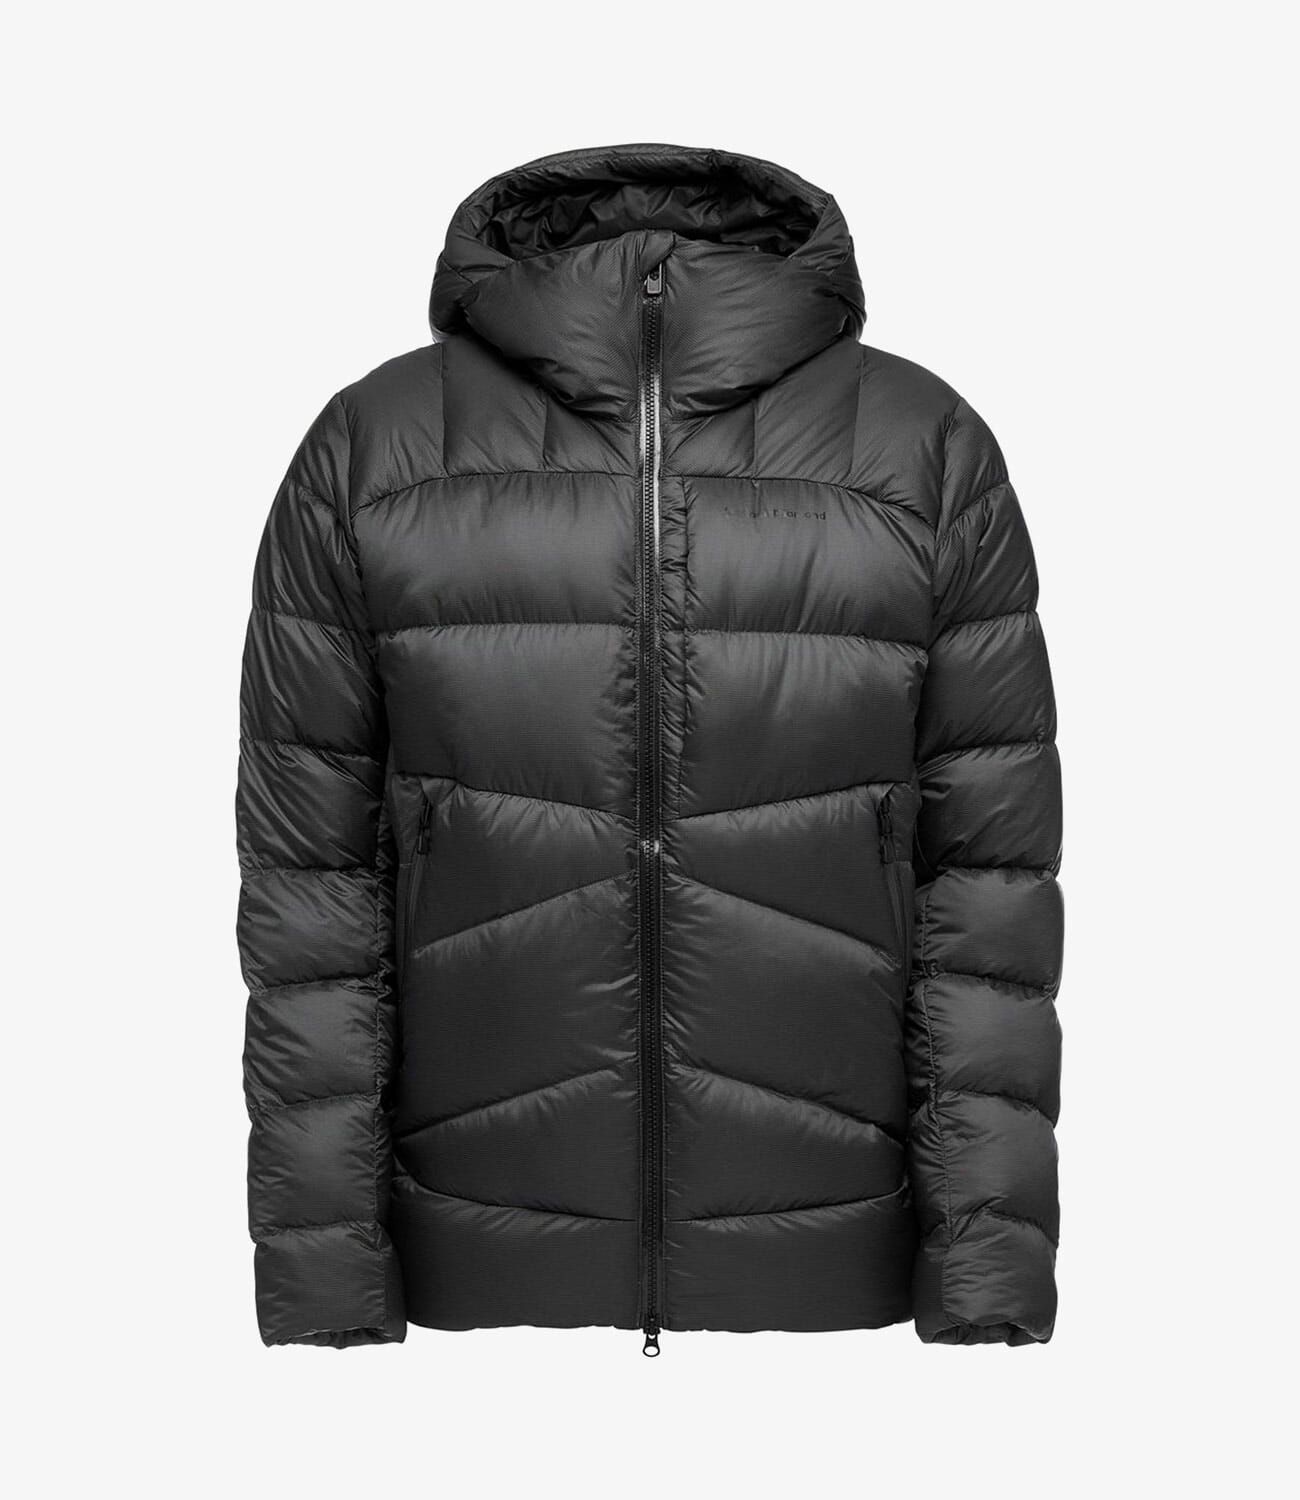 CBTLVSN Mens Warm Down Jacket Lightweight Packable Winter Puffer Jacket Coat 